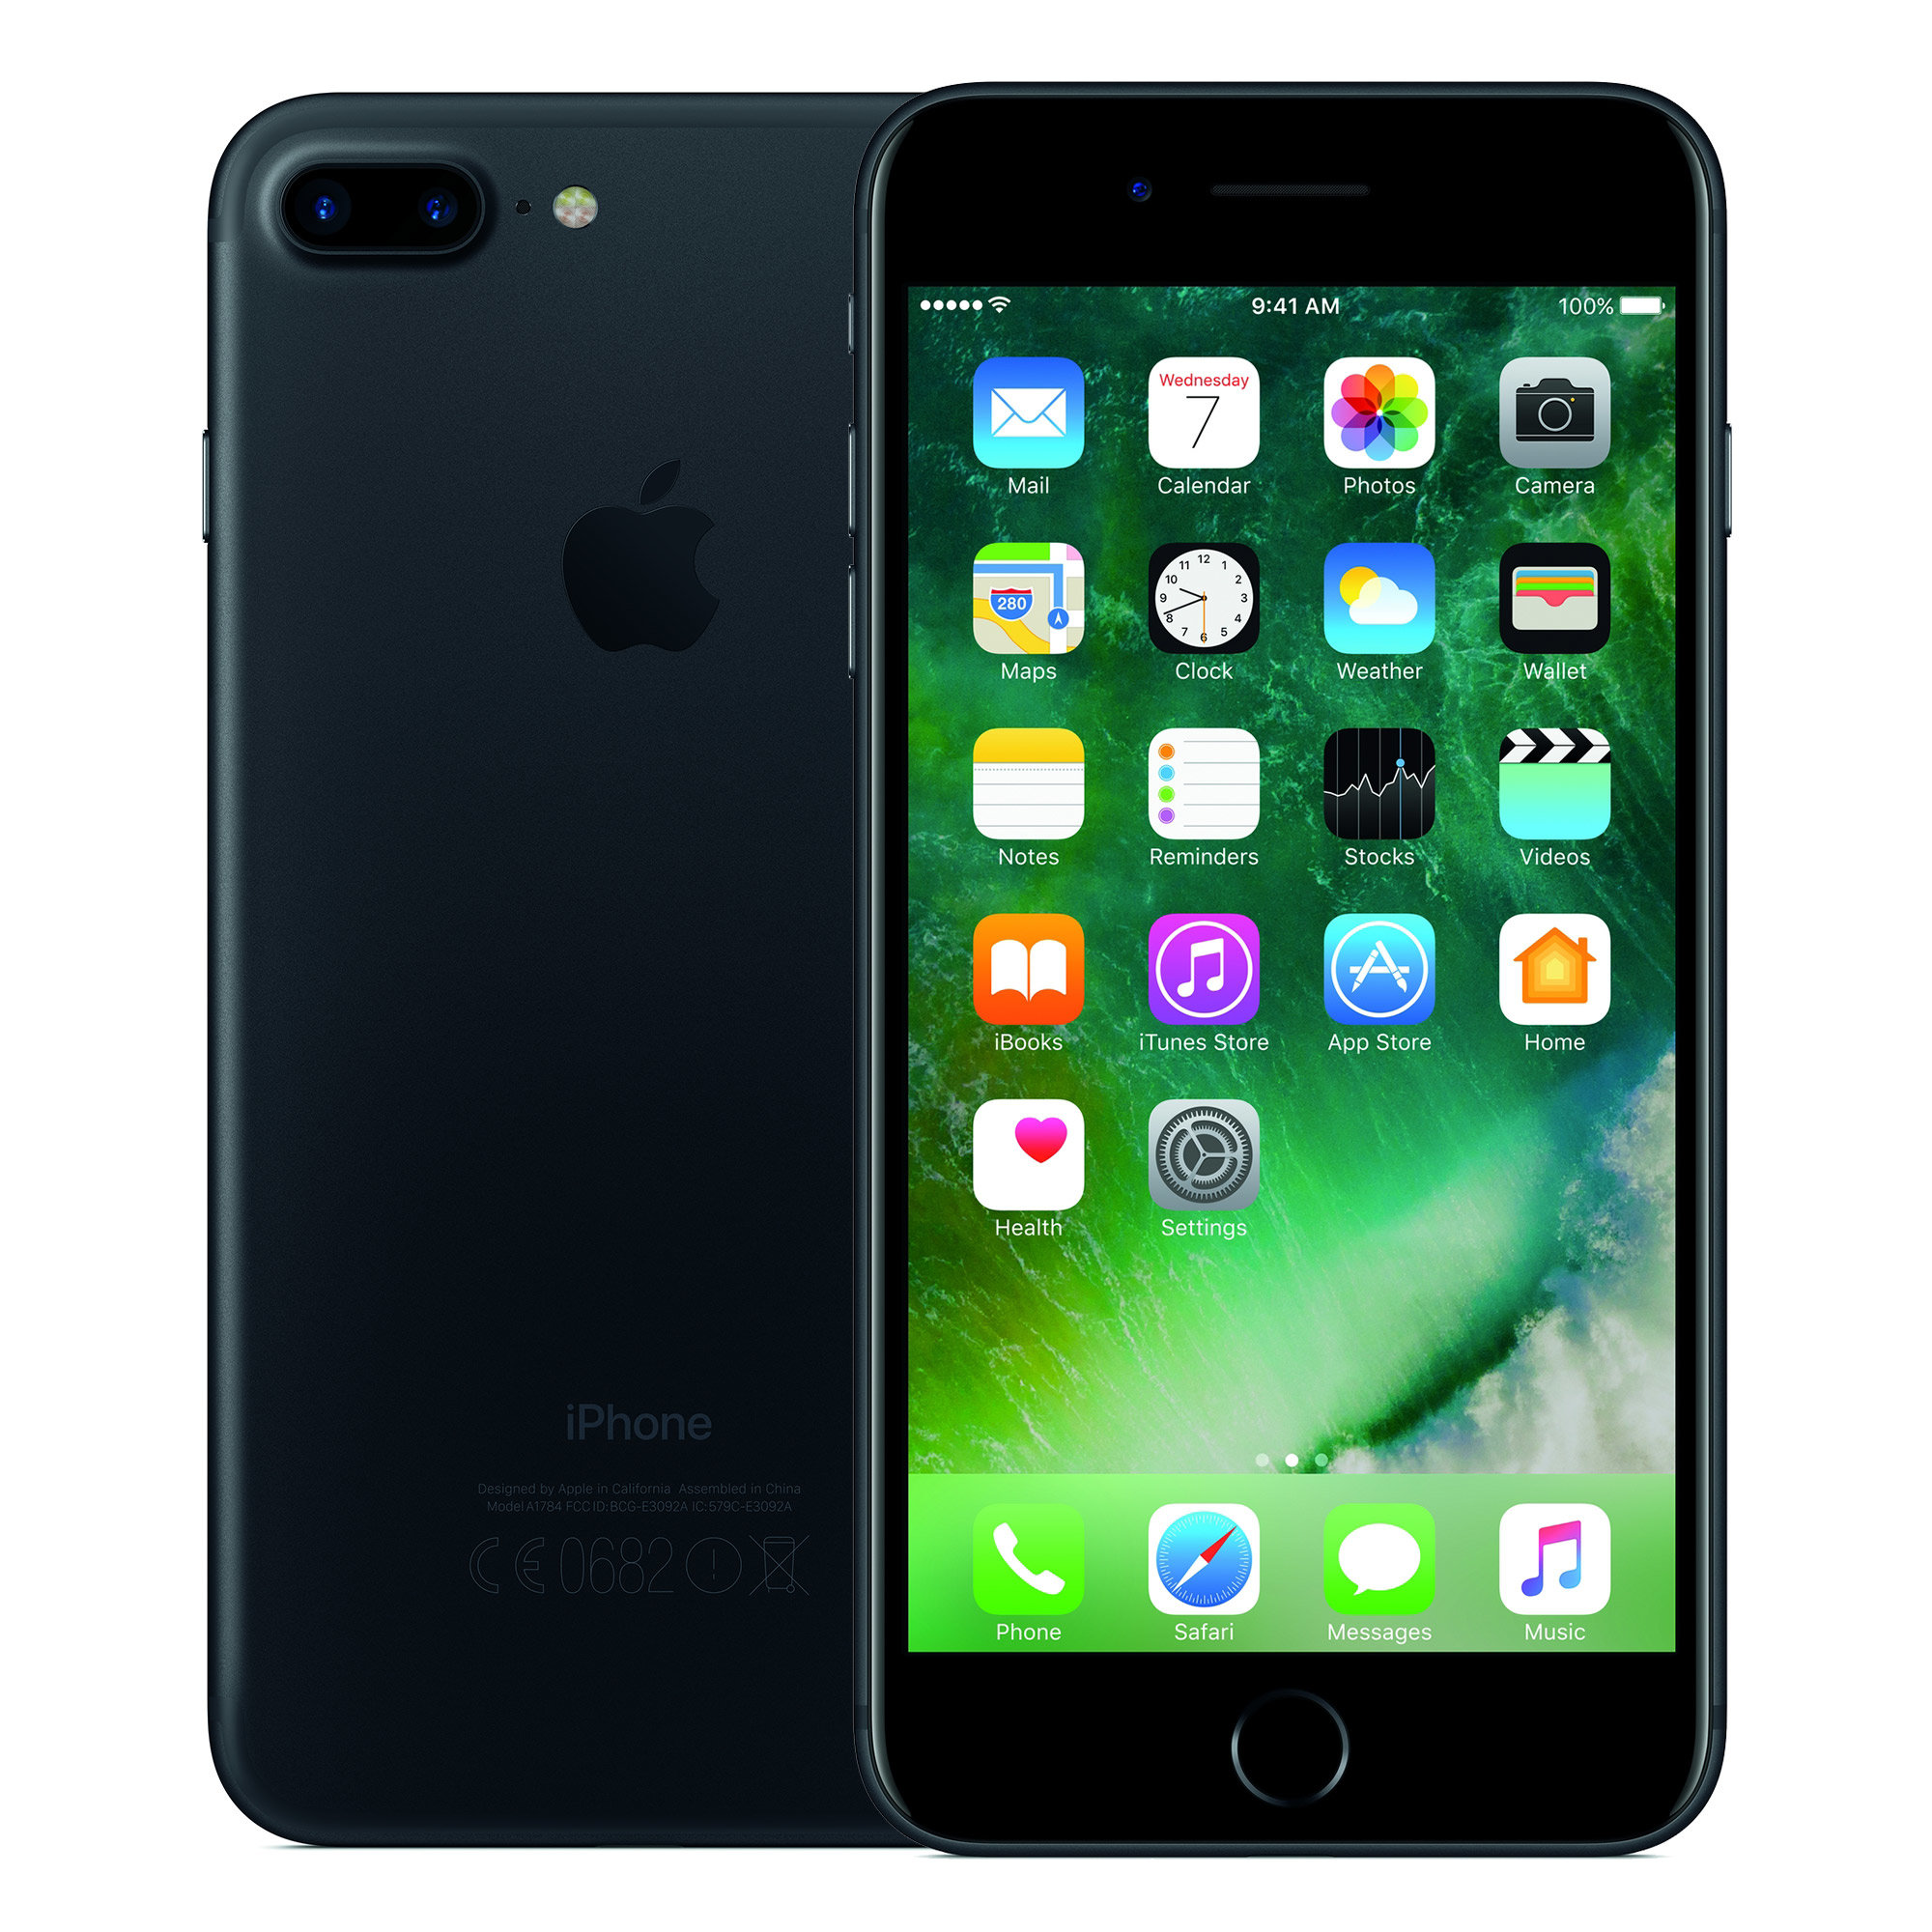 APPLE iPhone 7 Plus 128GB Czarny Smartfon - ceny i opinie w Media Expert